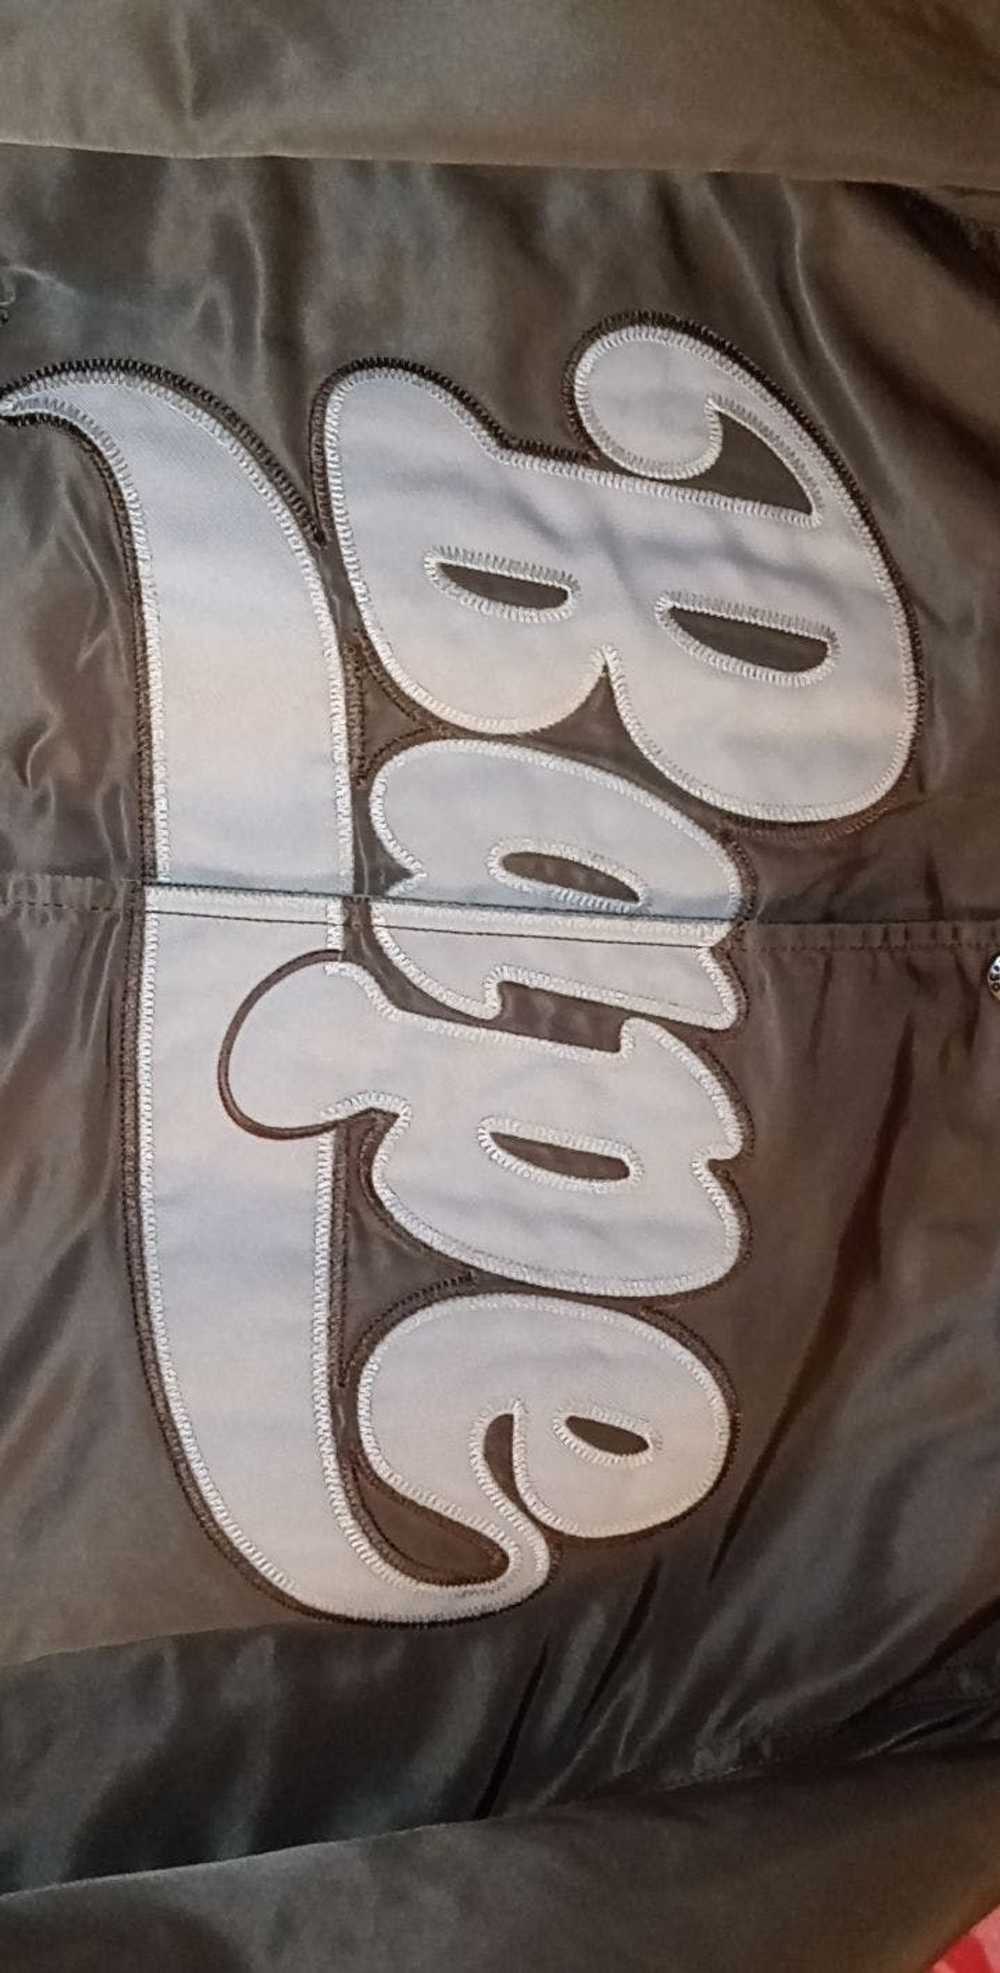 Bape Bape Iconic Nigo Era Bomber Jacket - image 5